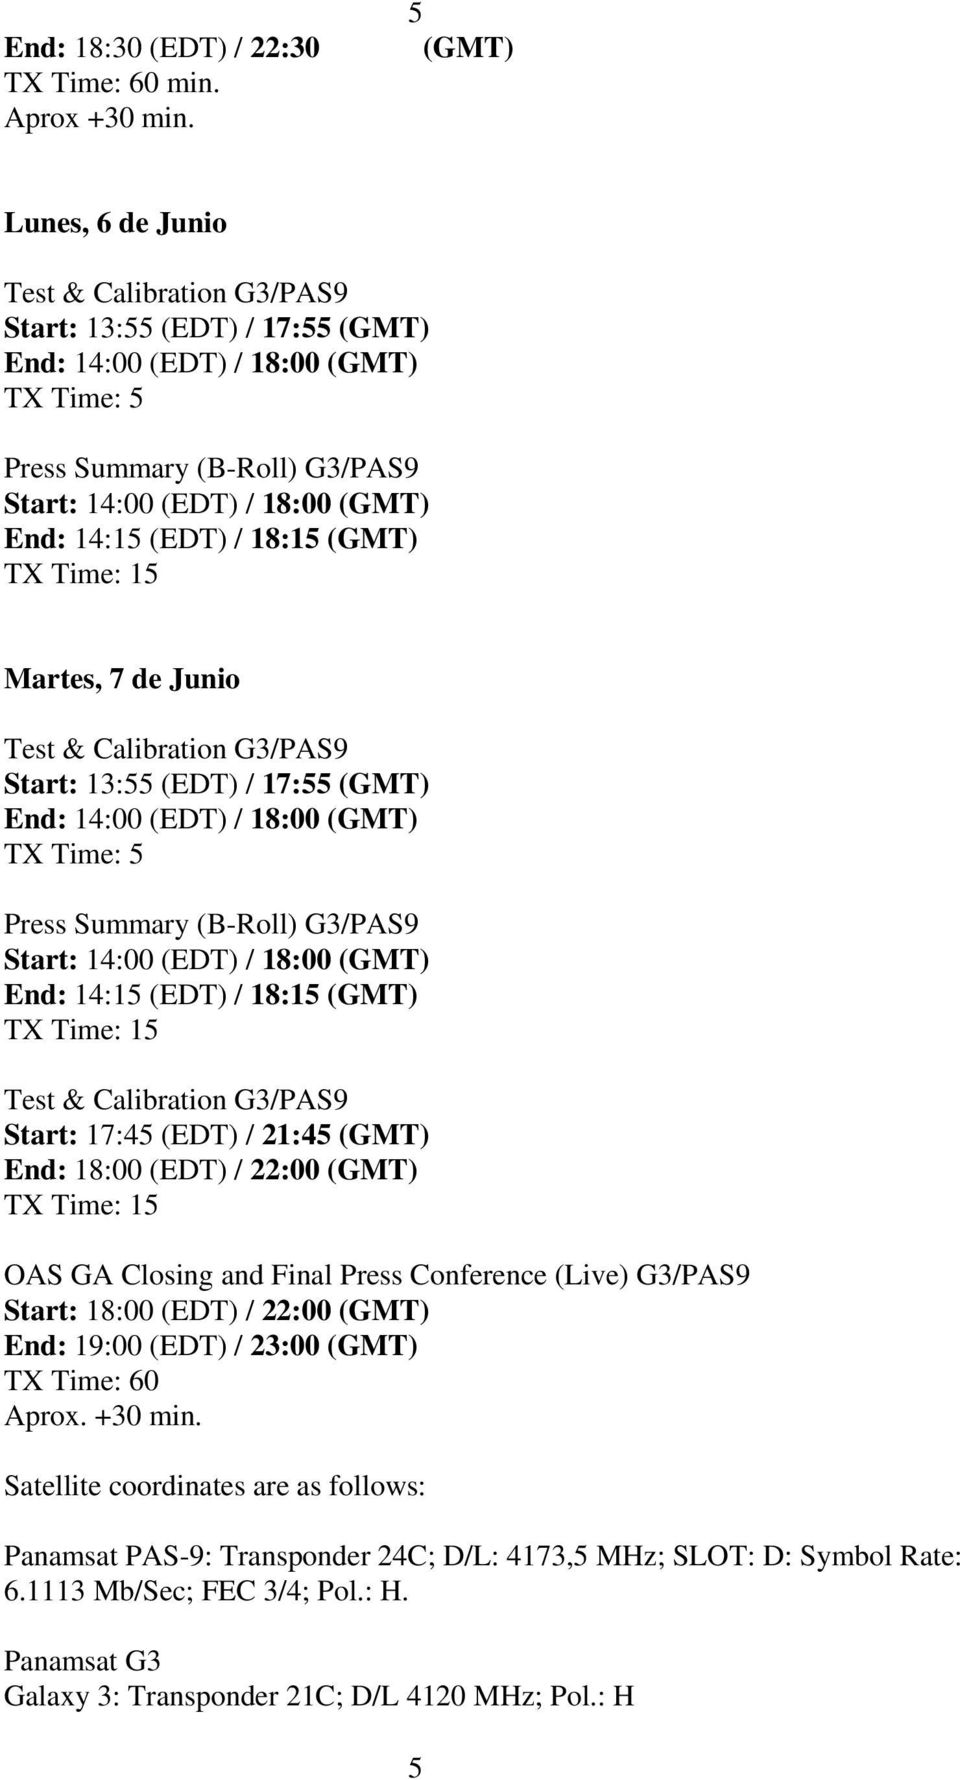 14:15 (EDT) / 18:15 (GMT) TX Time: 15 Martes, 7 de Junio Test & Calibration G3/PAS9 Start: 13:55 (EDT) / 17:55 (GMT) End: 14:00 (EDT) / 18:00 (GMT) TX Time: 5 Press Summary (B-Roll) G3/PAS9 Start: